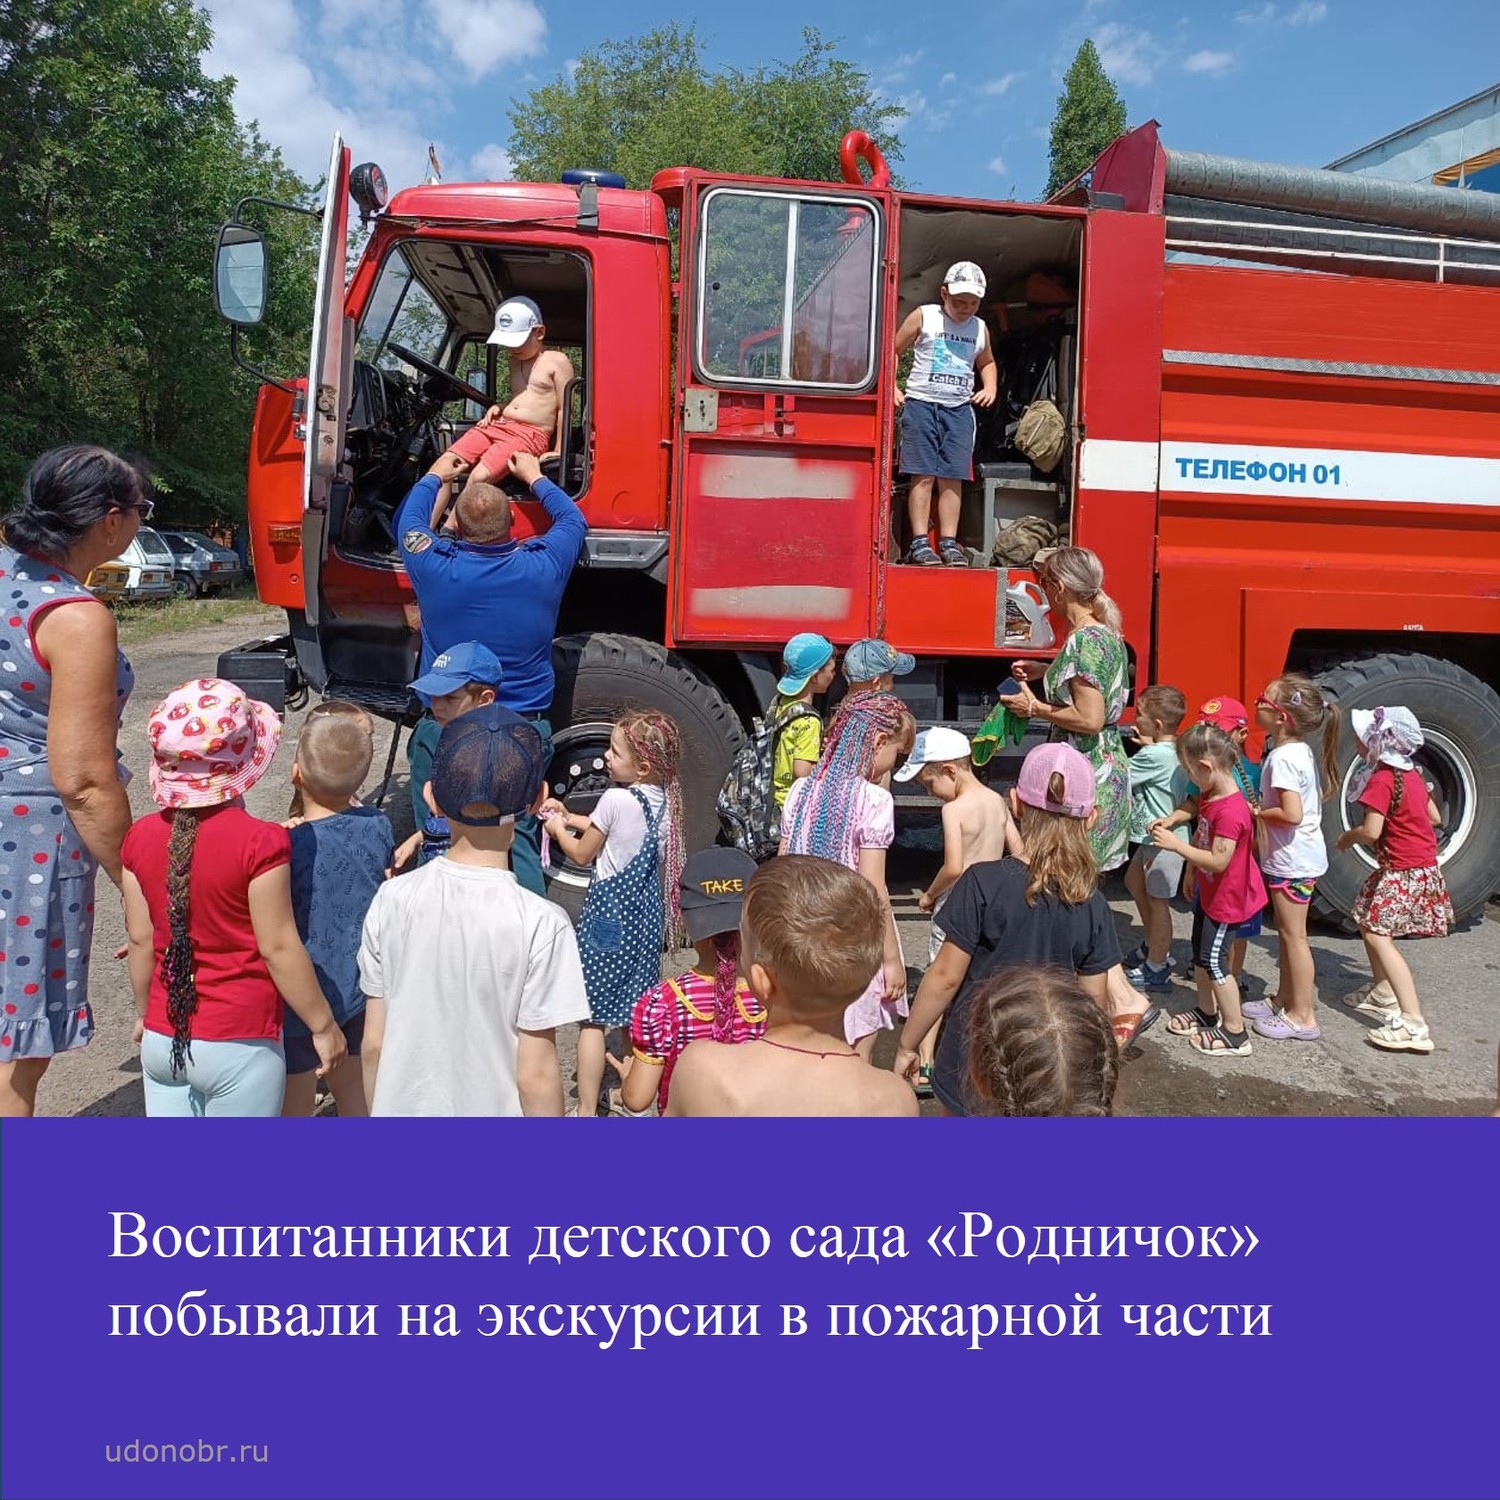 Воспитанники детского сада «Родничок» побывали на экскурсии в пожарной части